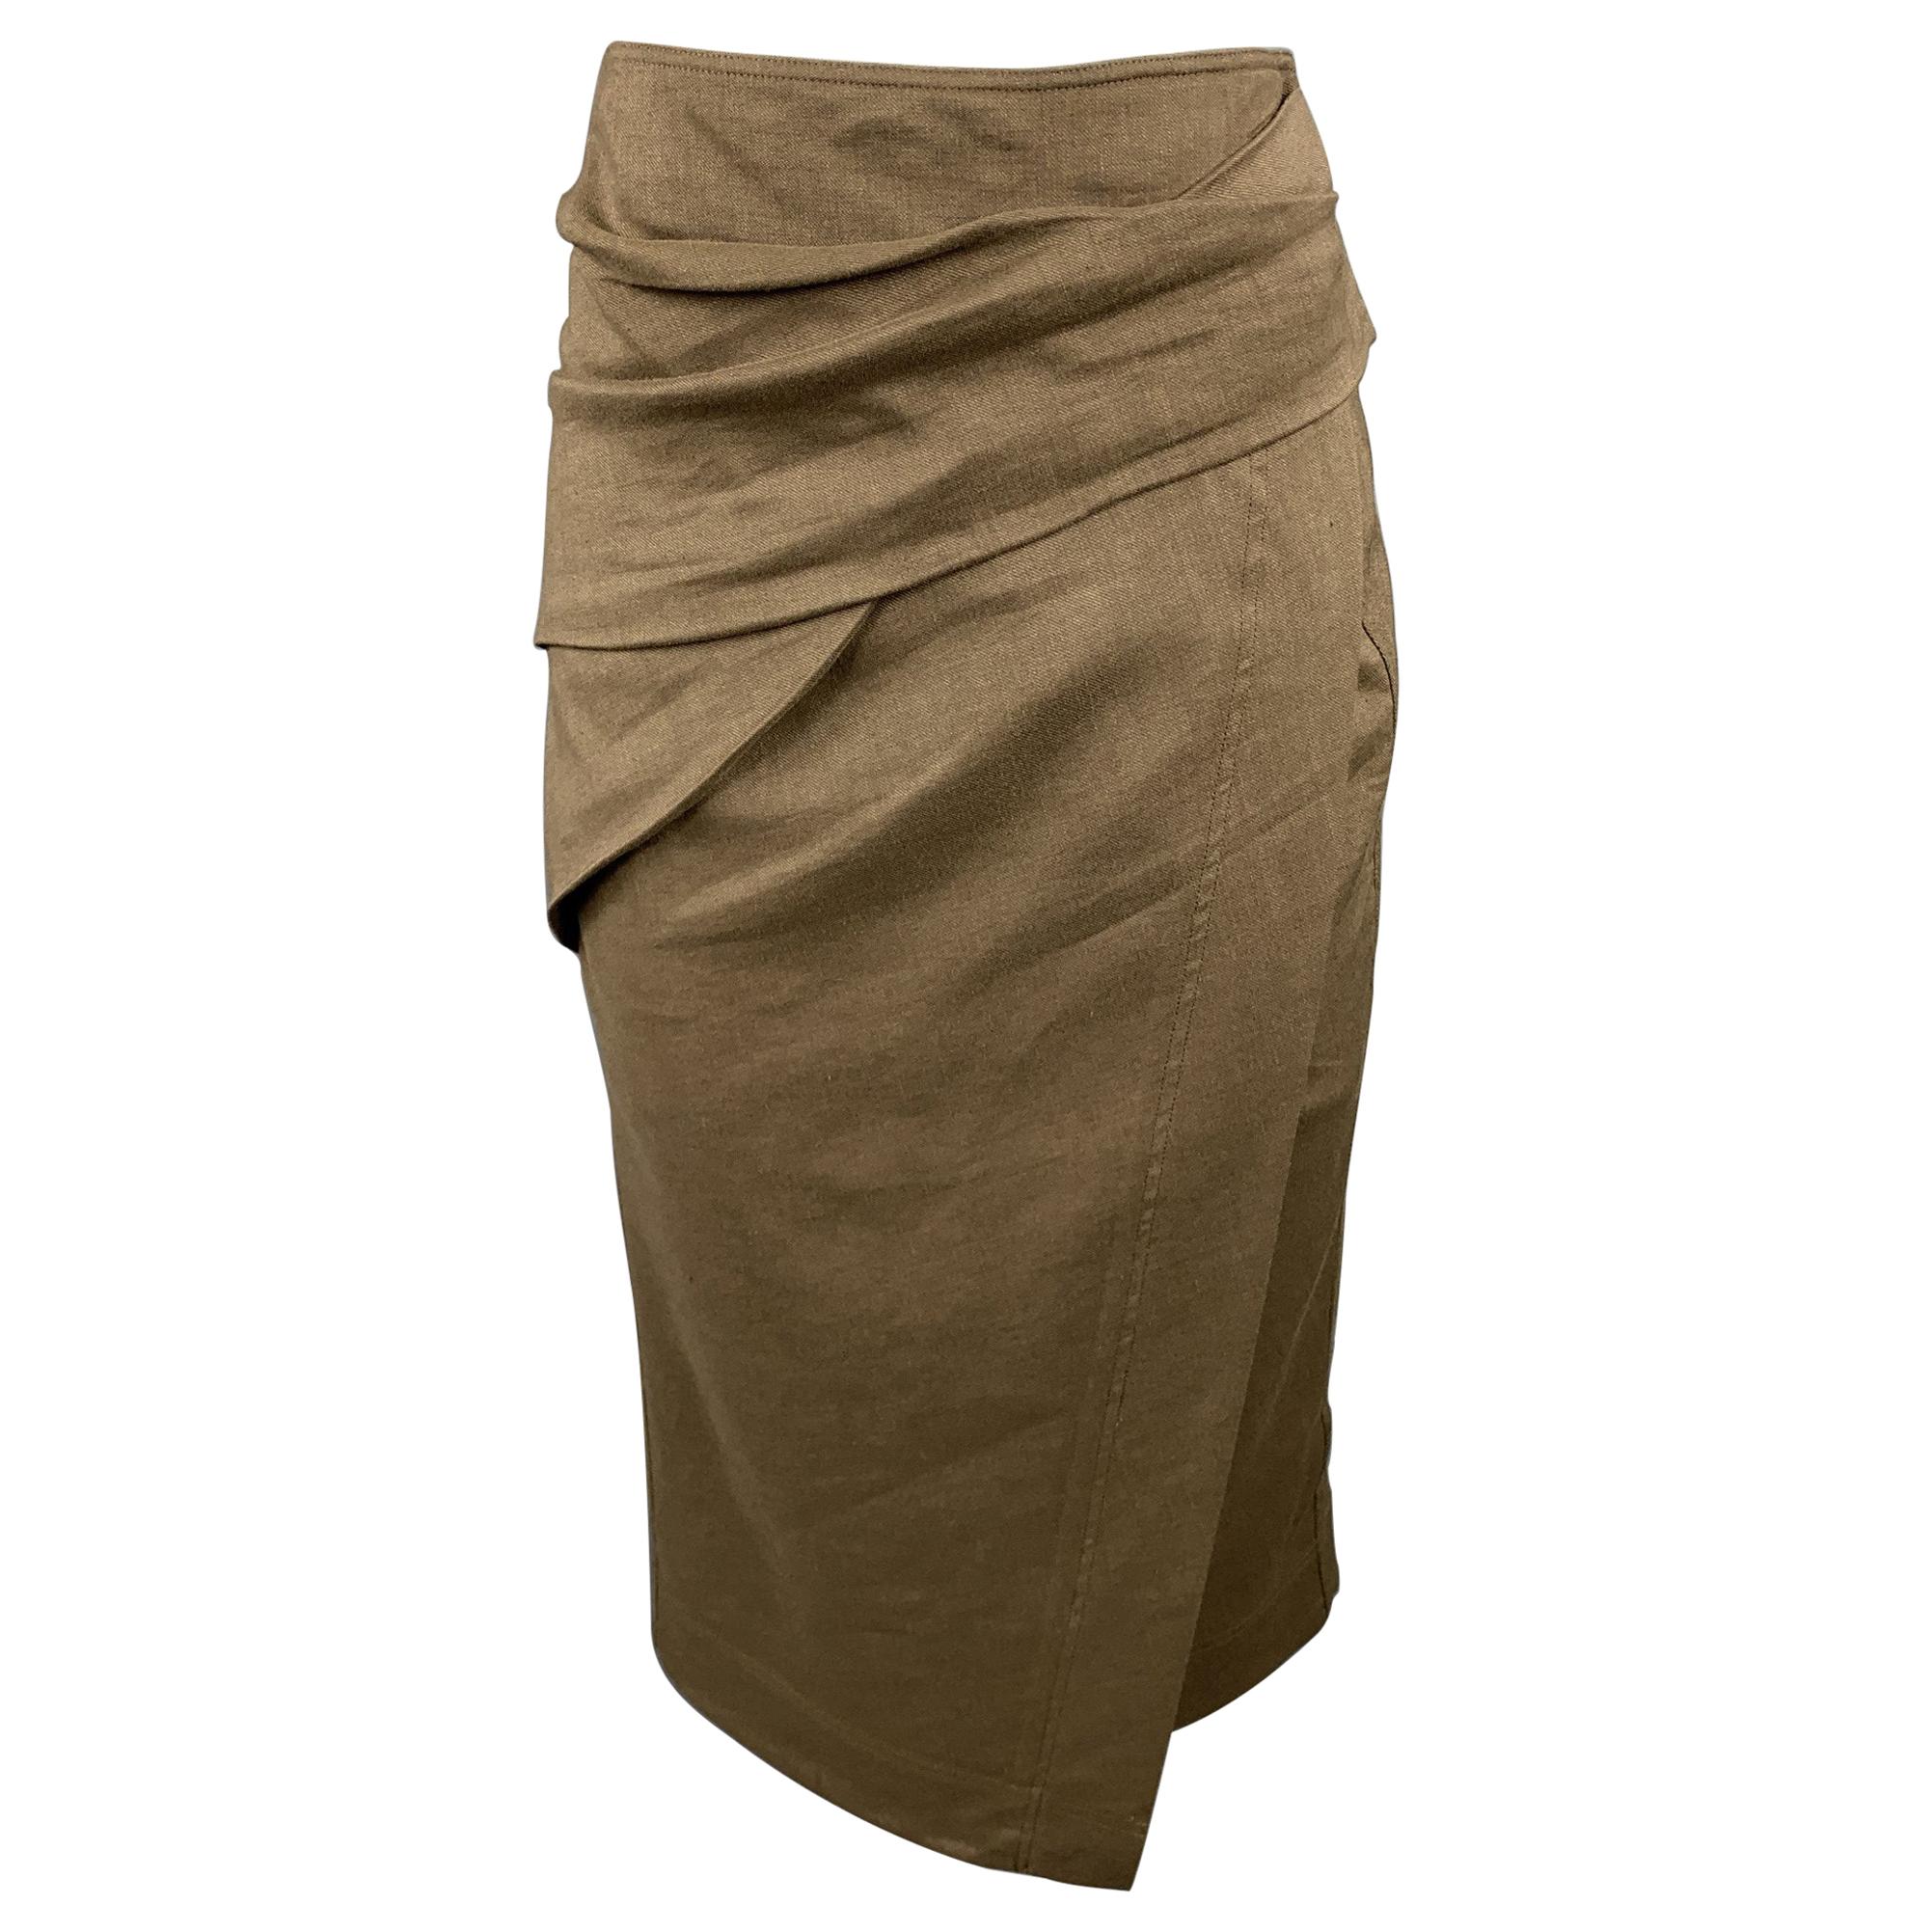 DONNA KARAN Size 4 Olive Twill Wool / Linen Draped Skirt